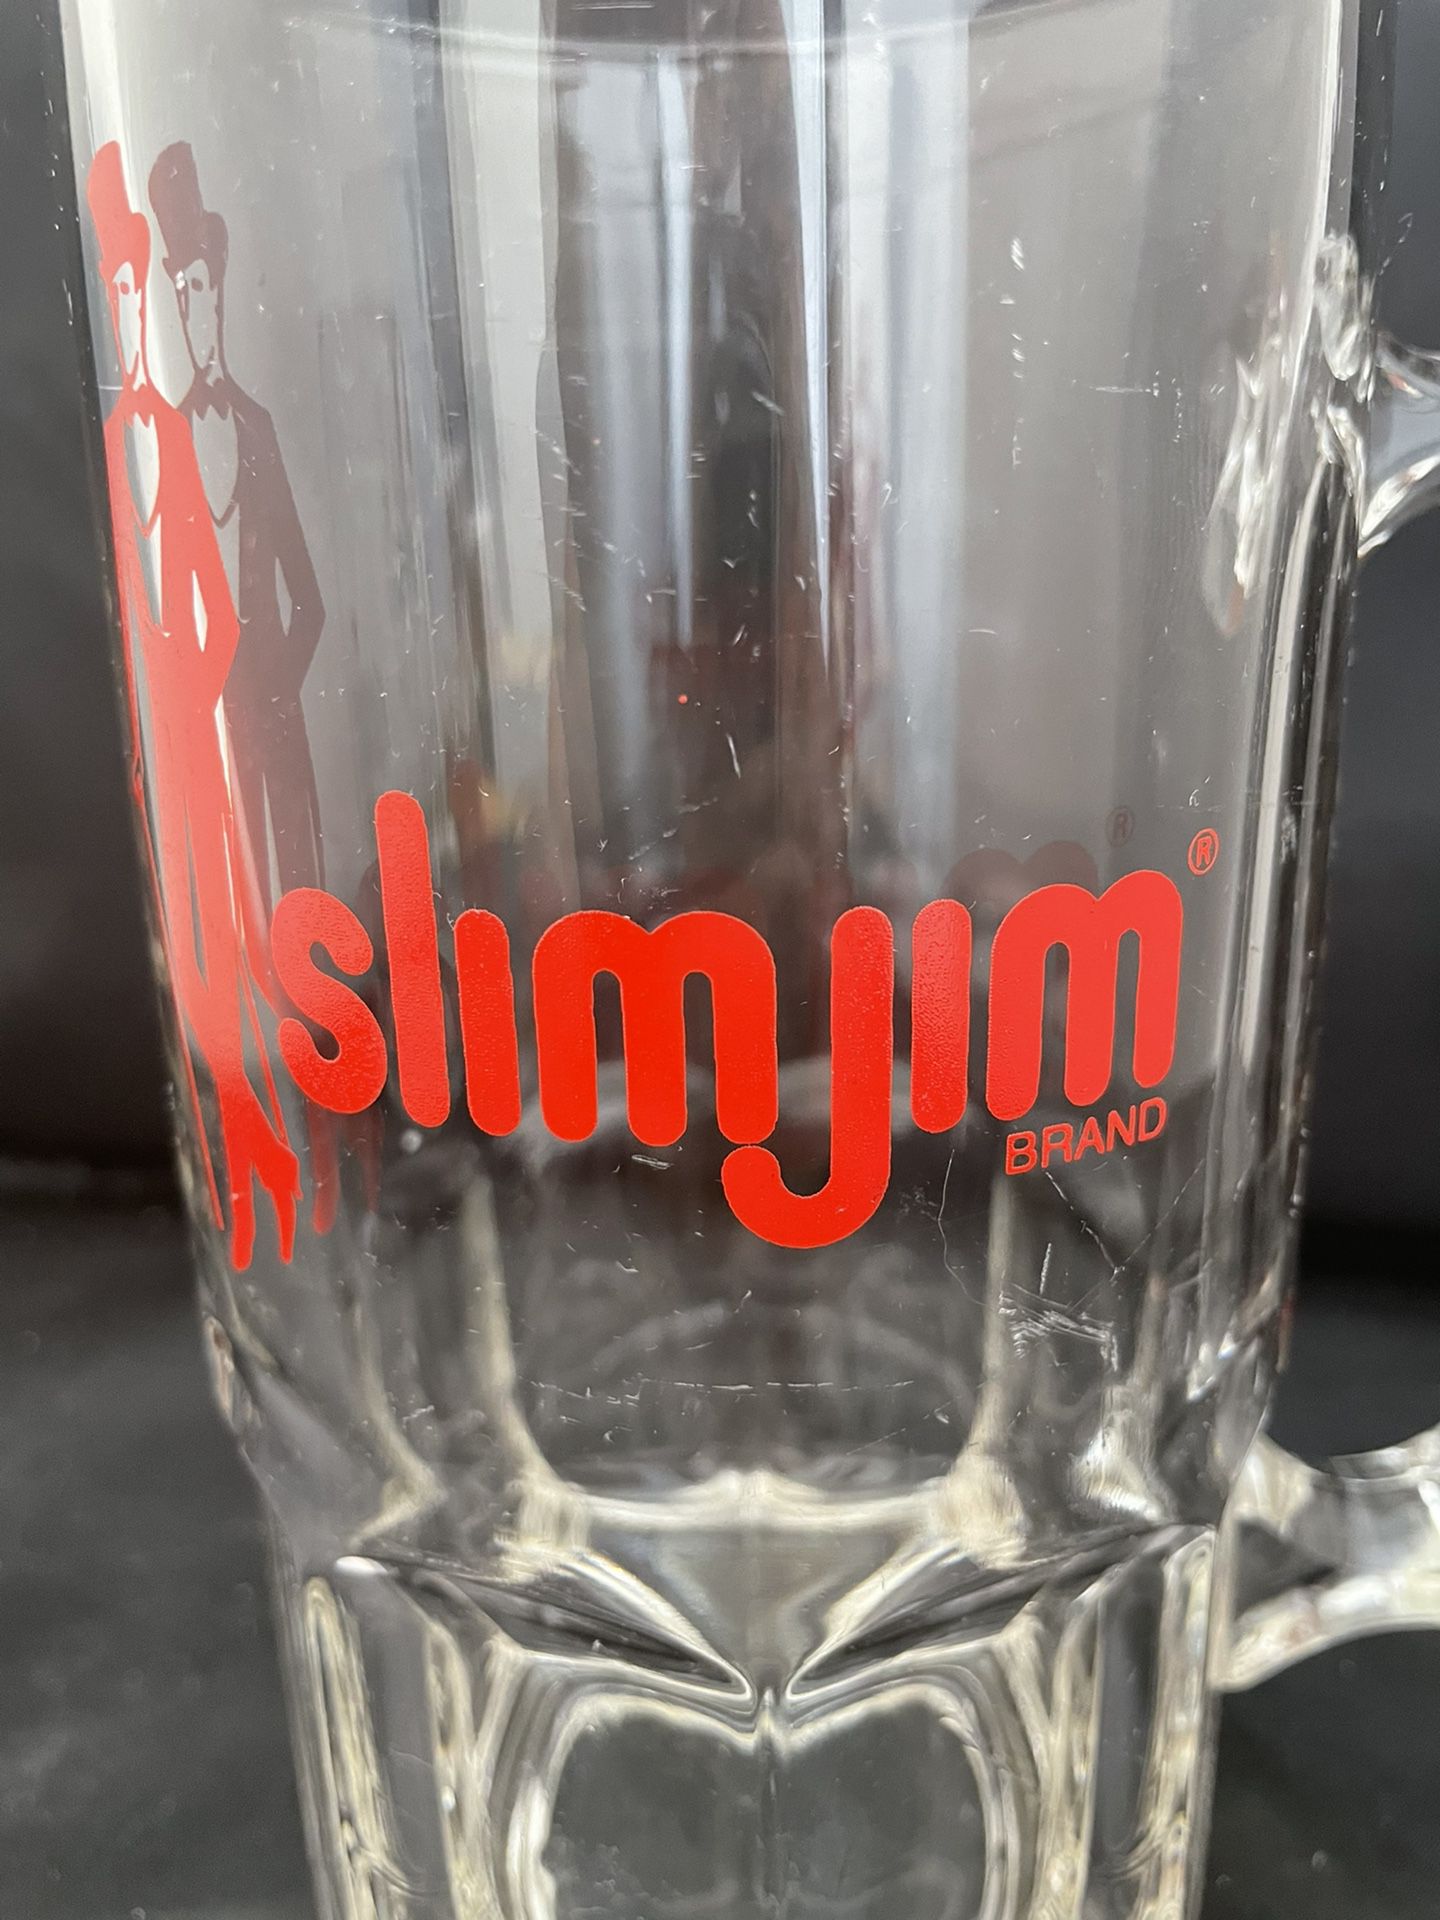 8” Slim Jim Brand Beef Jerky Beer Mug, Vintage Glassware. 